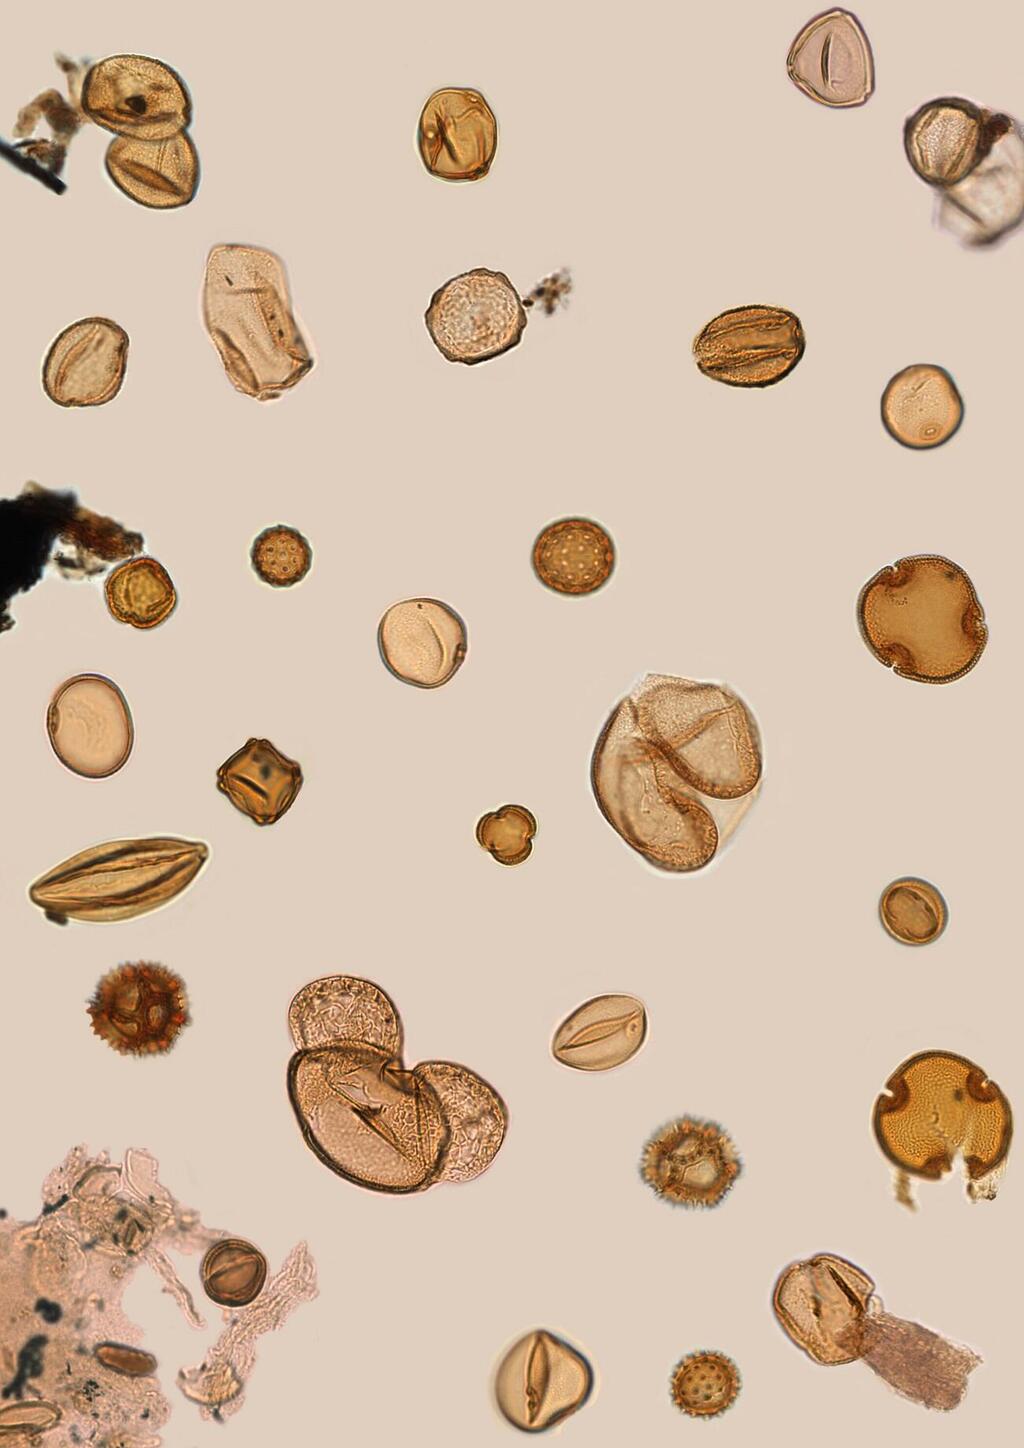 גרגירי אבקה בני 400 אלף שנים, אשר בזכות יכולת השימור הטובה שלהם, נשארים שלמים בליבות הקידוח, מה שמאפשר לשחזר צמחייה ושינויי אקלים בעבר הגיאולוגי של אזור הים התיכון